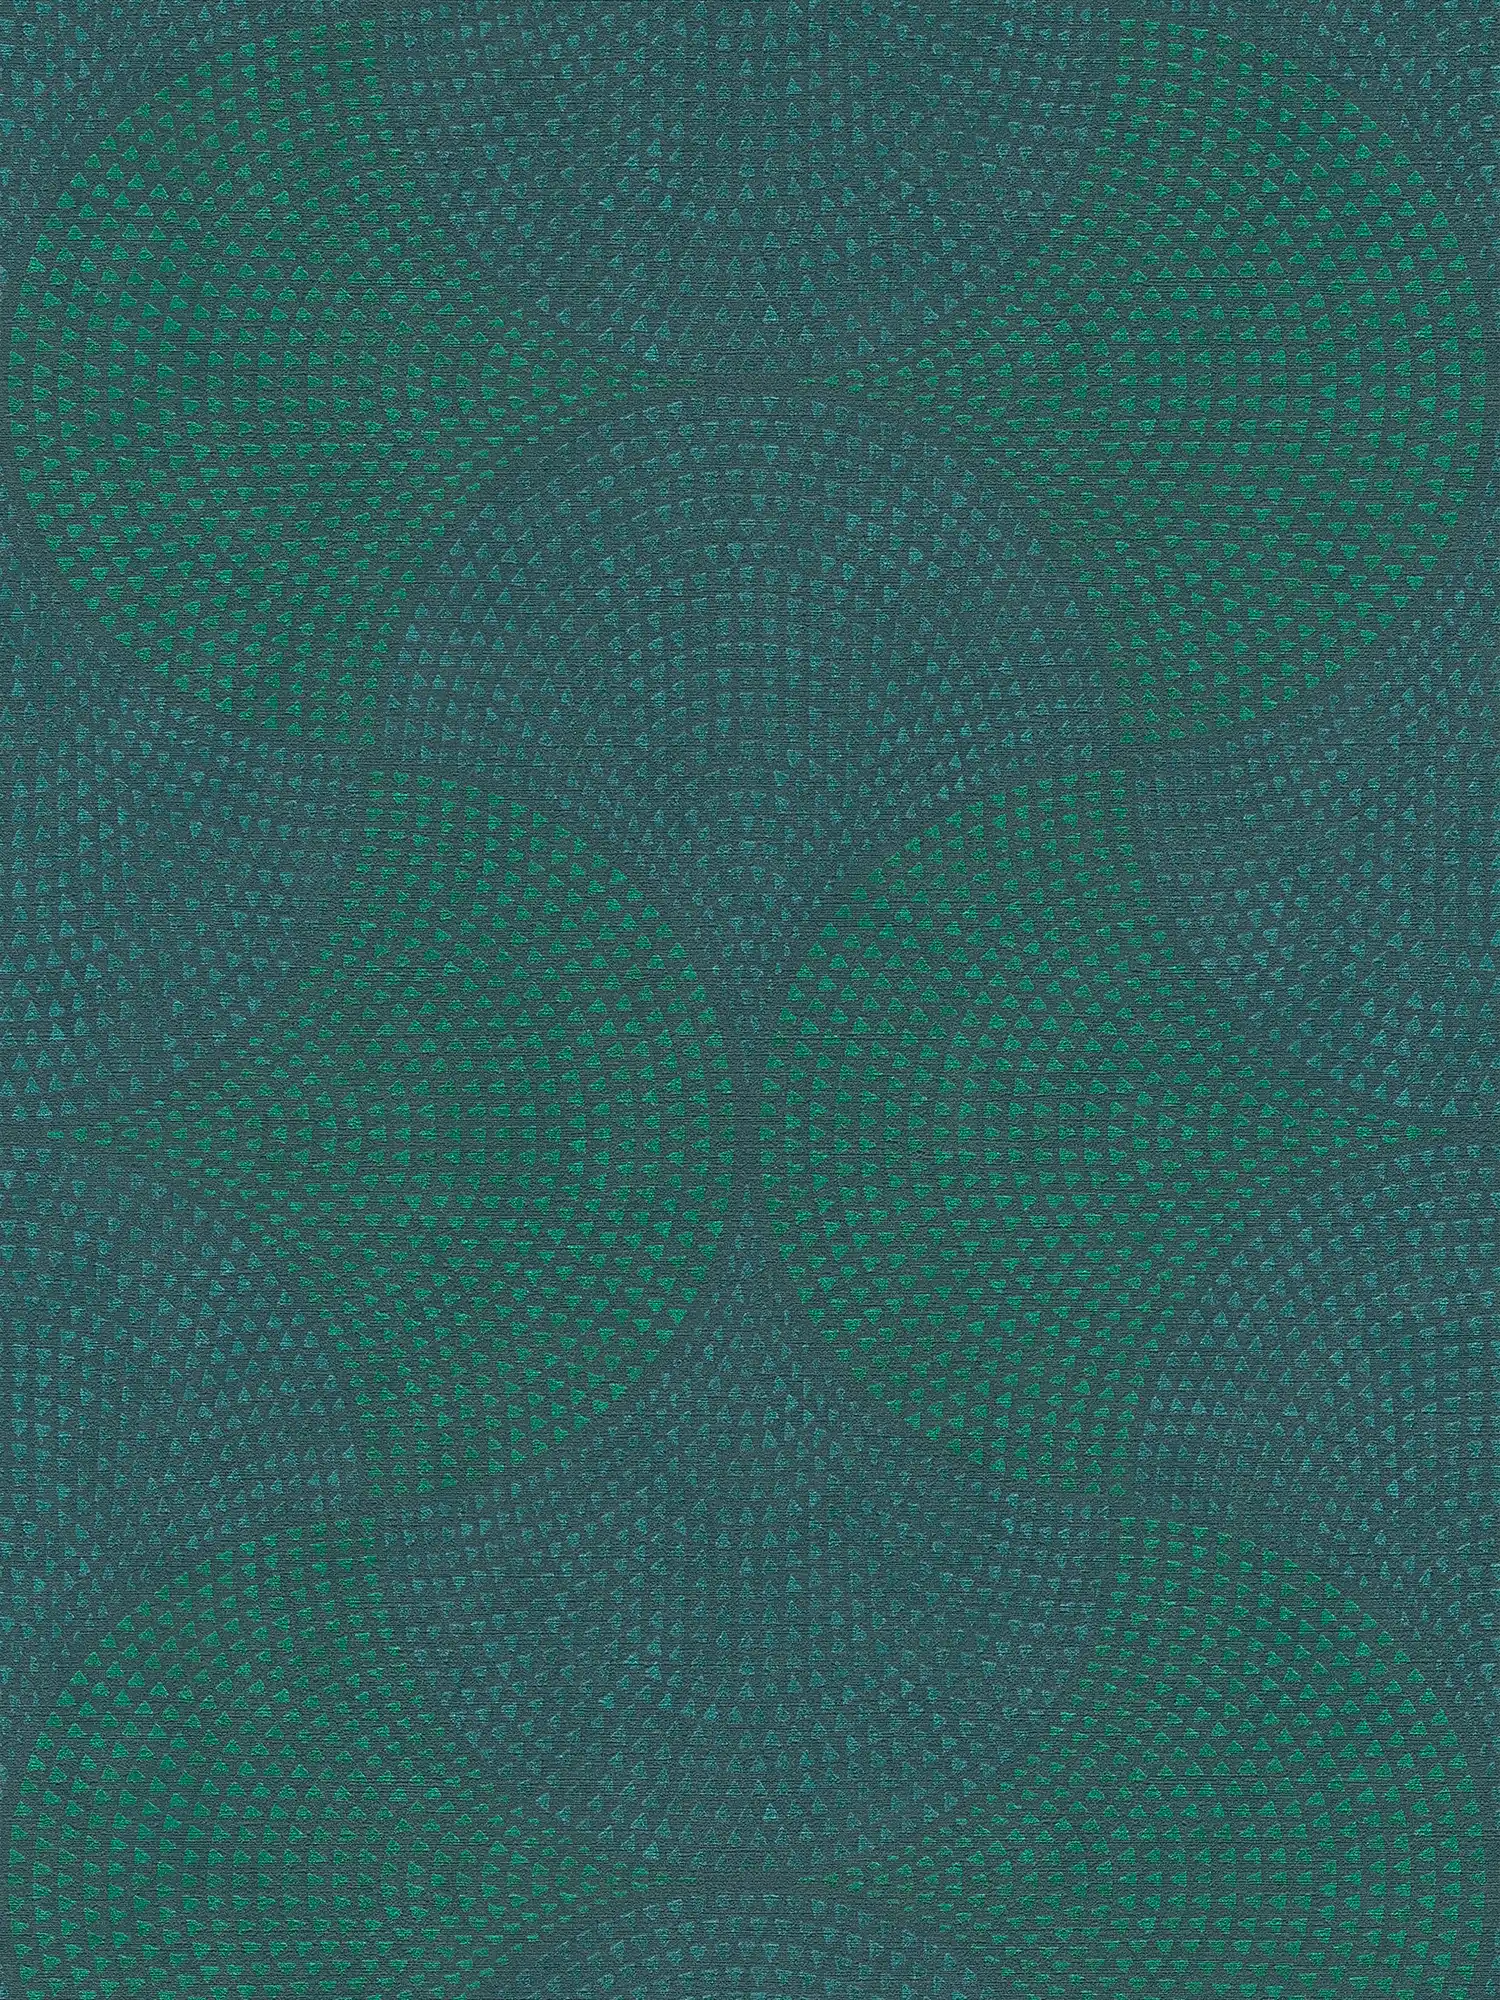 Vliesbehang metallic design met mozaïekpatroon - blauw, groen, metallic
